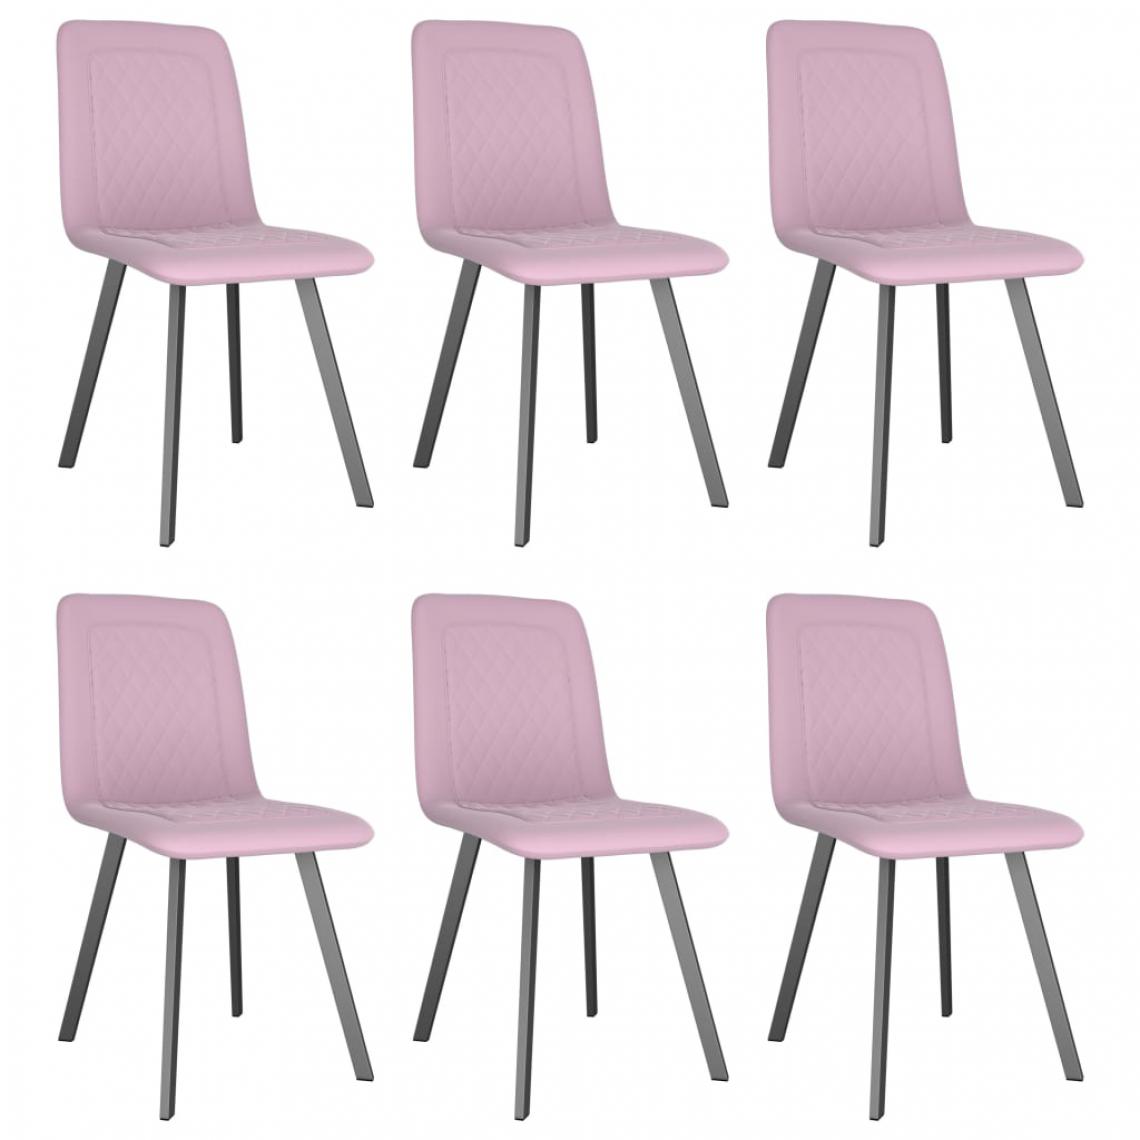 Icaverne - Chic Fauteuils et chaises gamme Naypyidaw Chaises de salle à manger 6 pcs Rose Velours - Chaises